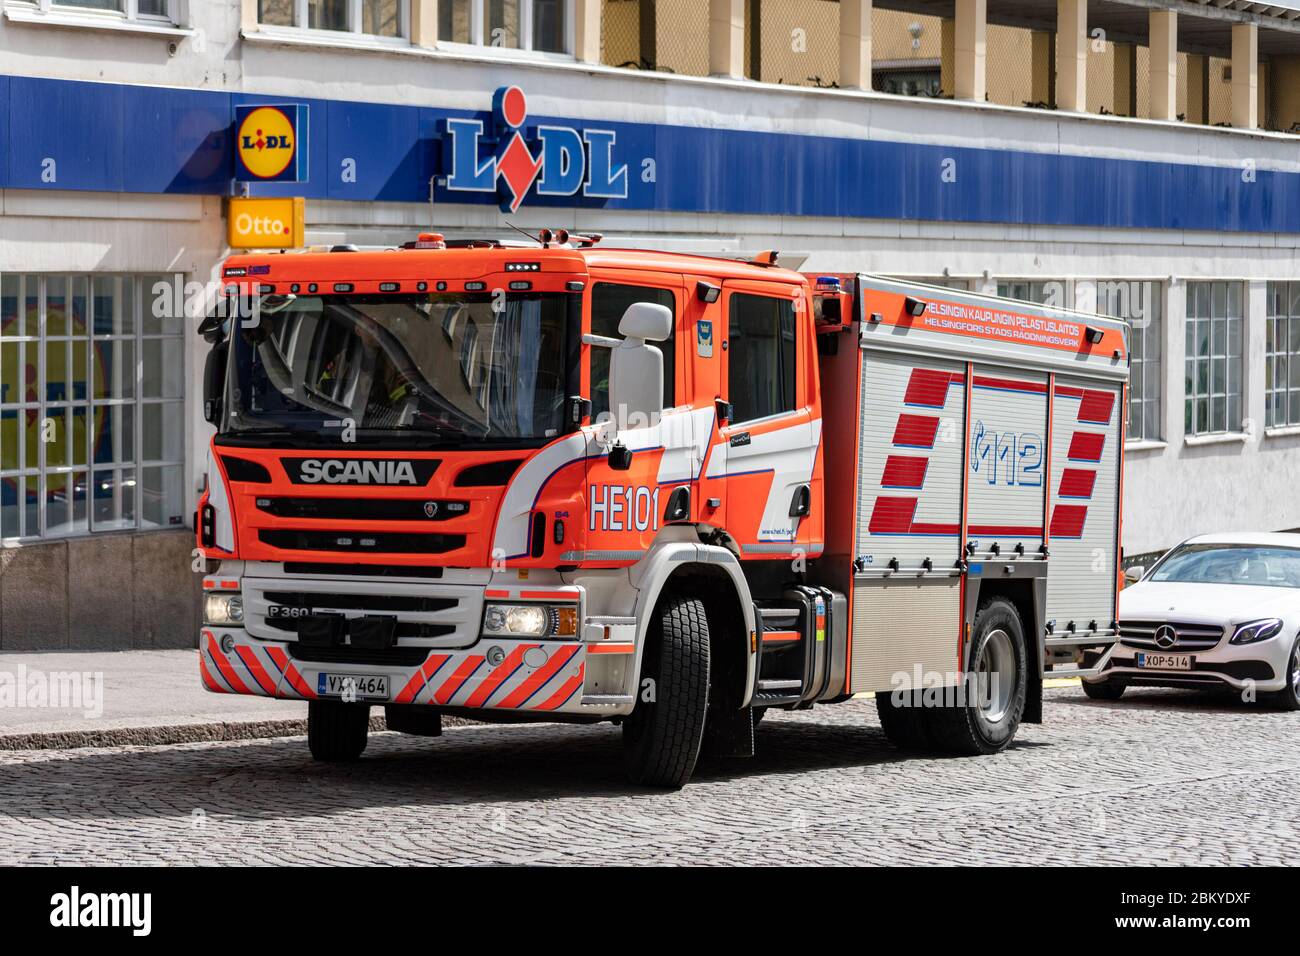 Scania-Feuerwehrmaschine parkte vor dem Lidl-Discounter im Kallio-Viertel von Helsinki, Finnland Stockfoto